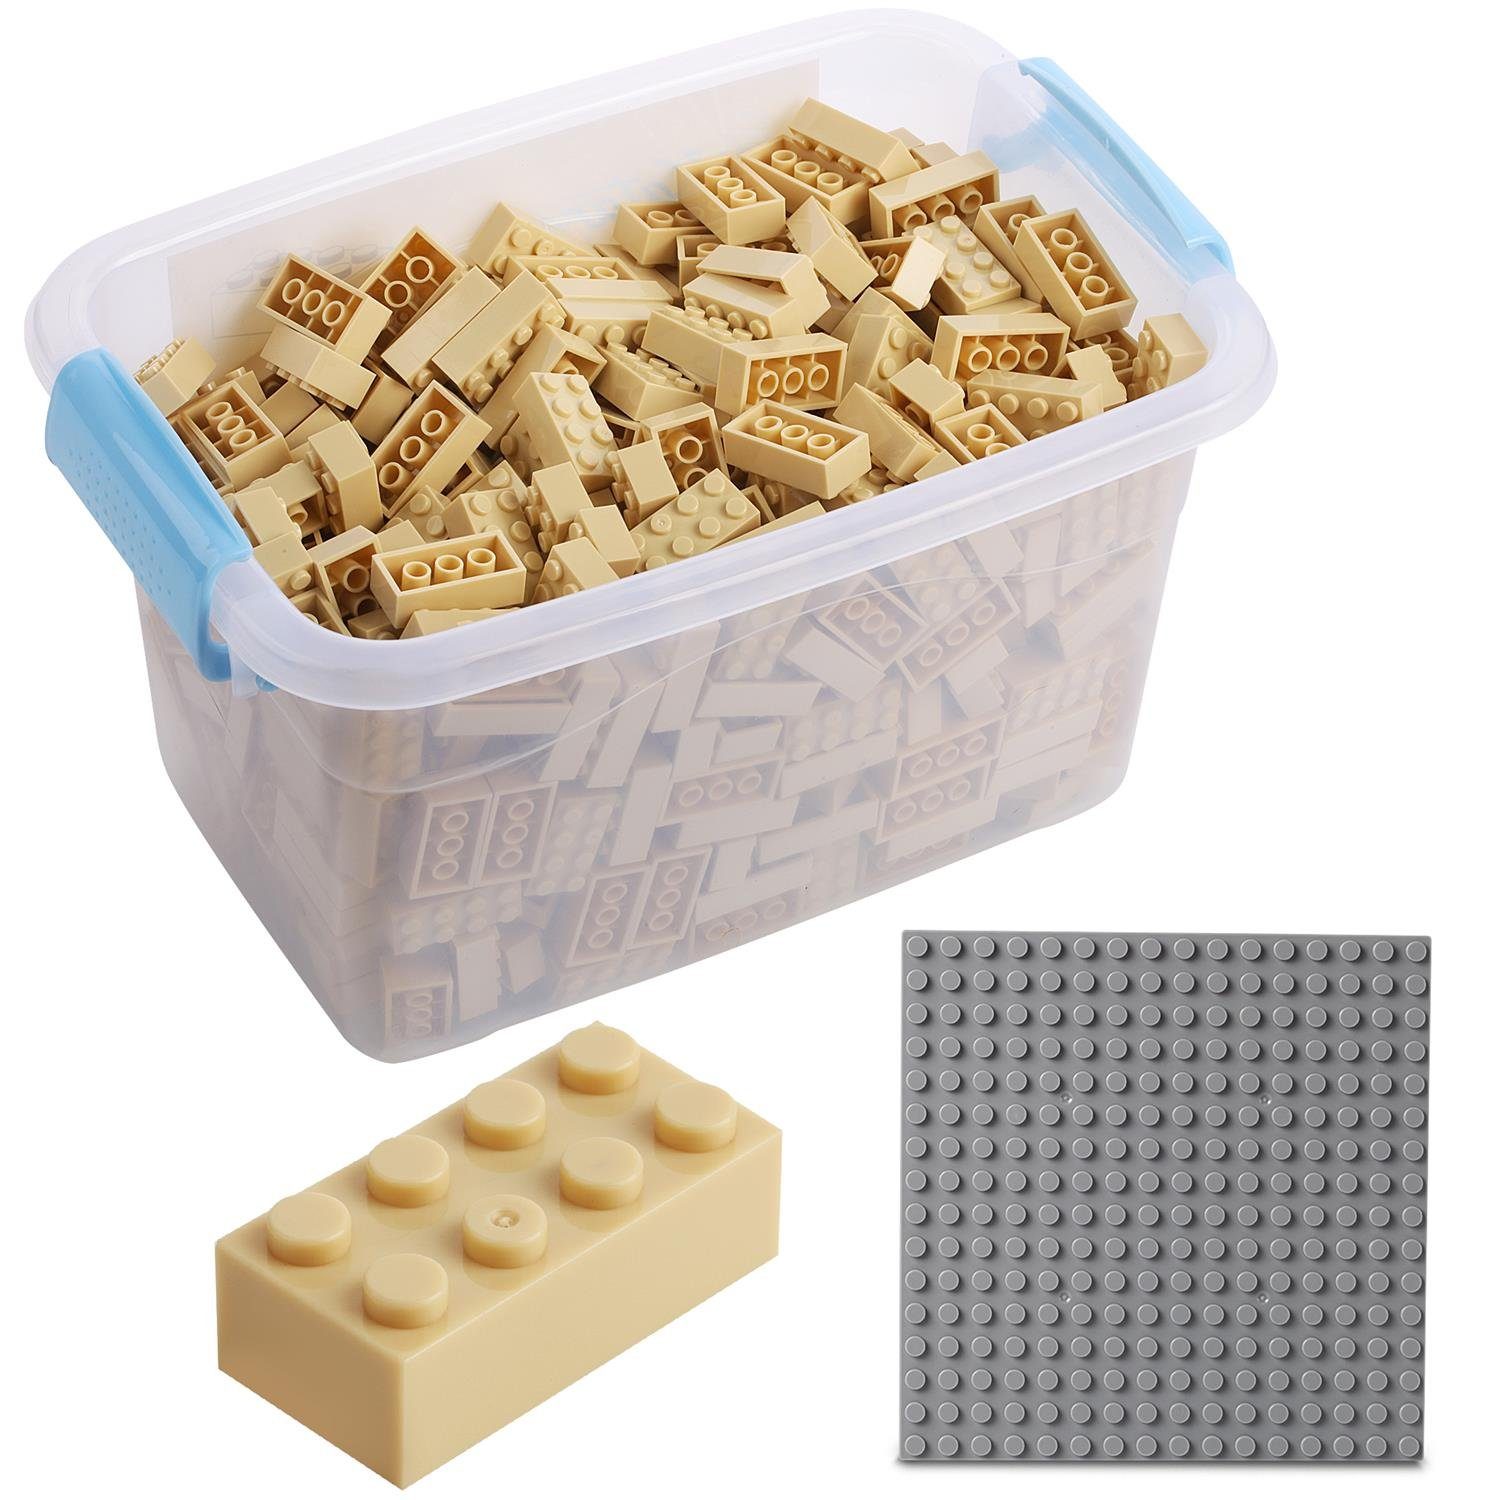 Katara Konstruktionsspielsteine Bausteine Box-Set Kompatibel Herstellern + mit + Farben Box, Steinen - beige allen (3er Set), Platte verschiedene Anderen zu 520